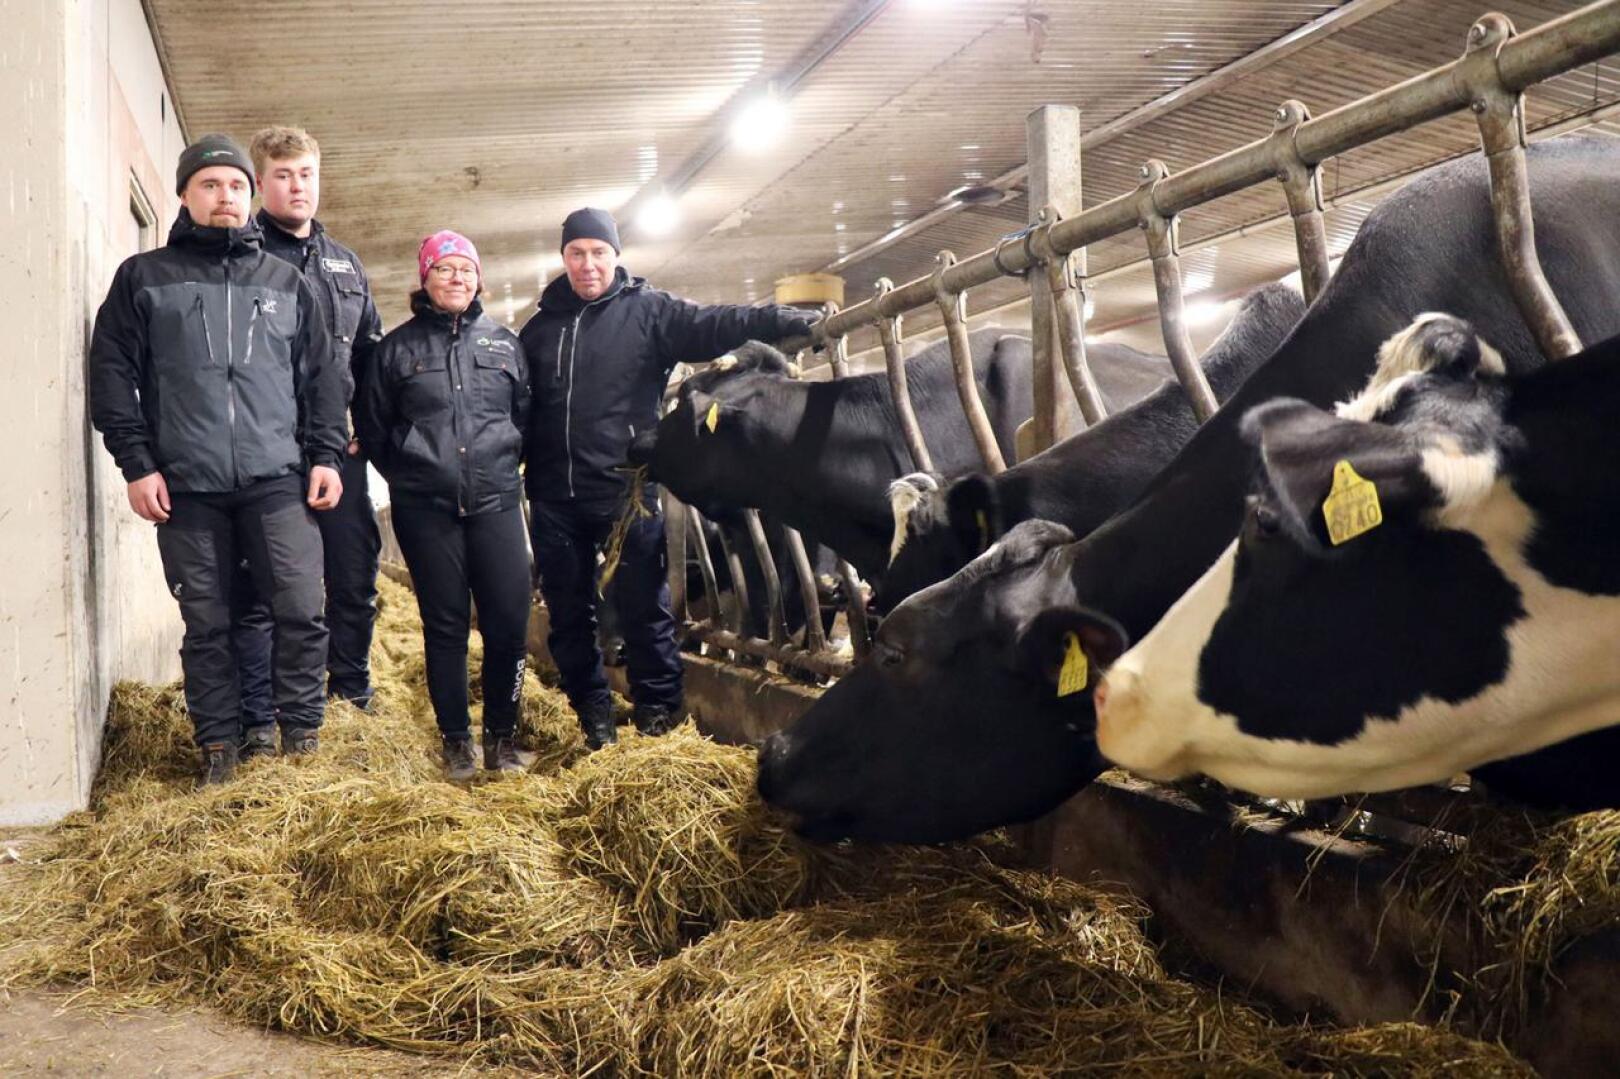 Pöyhösen maatilalla työskentelee rinnatusten kaksi sukupolvea: pojat Konsta ja Viljami sekä äiti Auli ja isä Aki Pöyhönen.